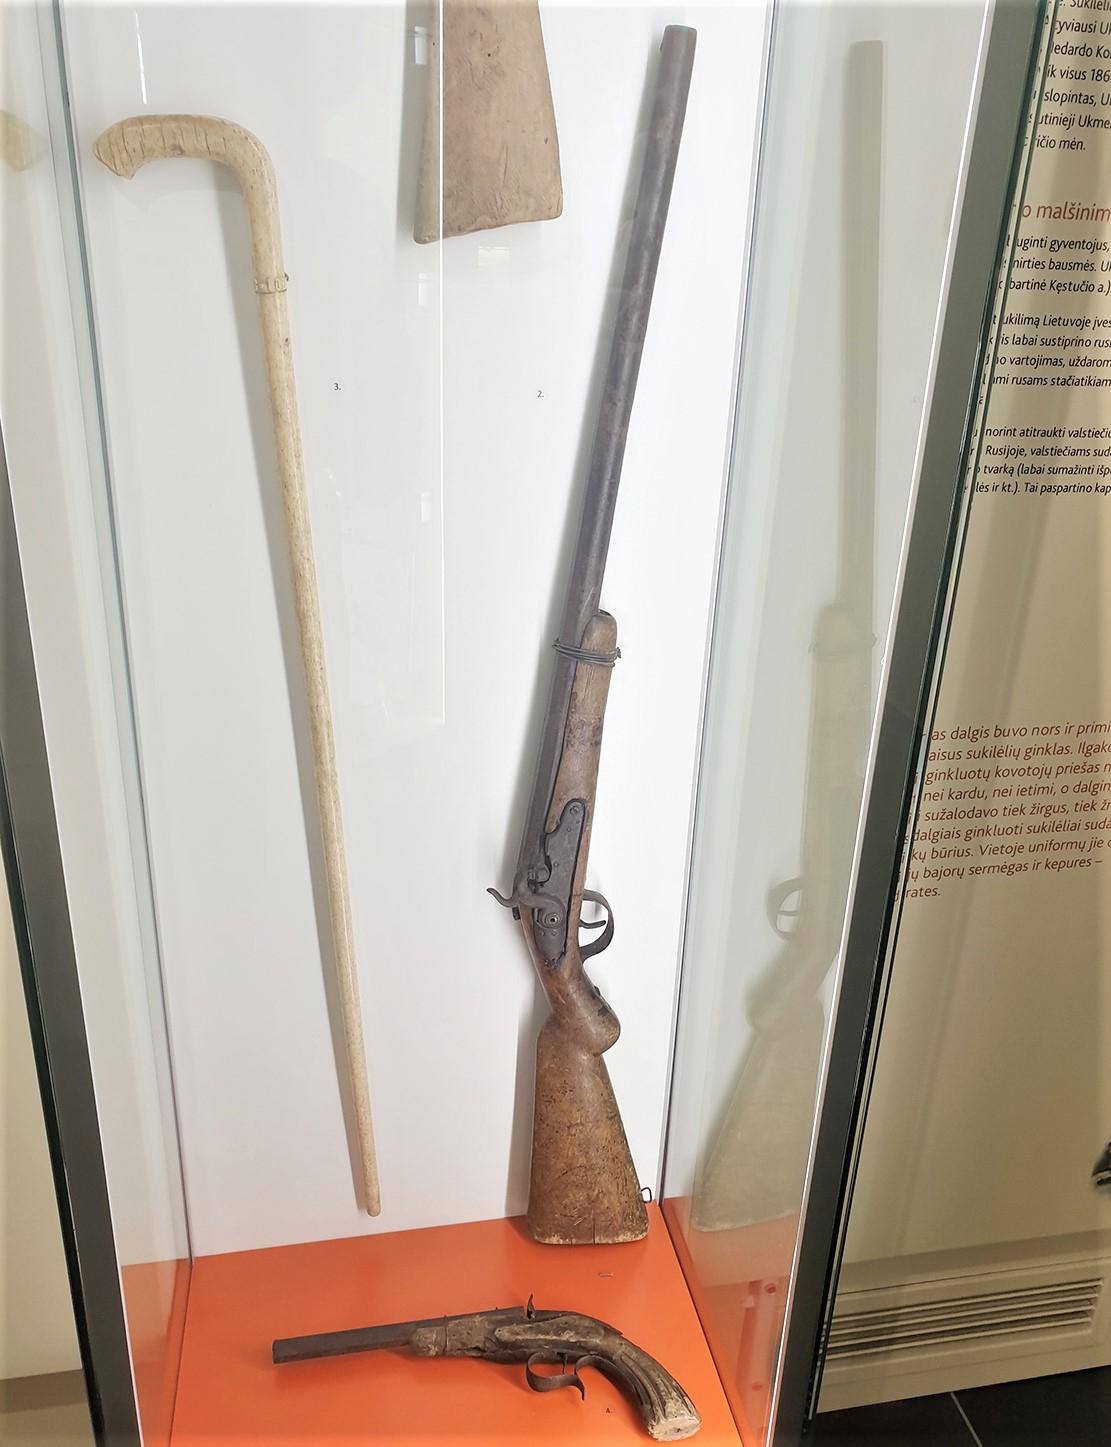 Bus registruoti ir muziejuje esantys ginklai / Įdomiausius ginklus galima pamatyti muziejaus ekspozicijoje.  Autorės nuotr.